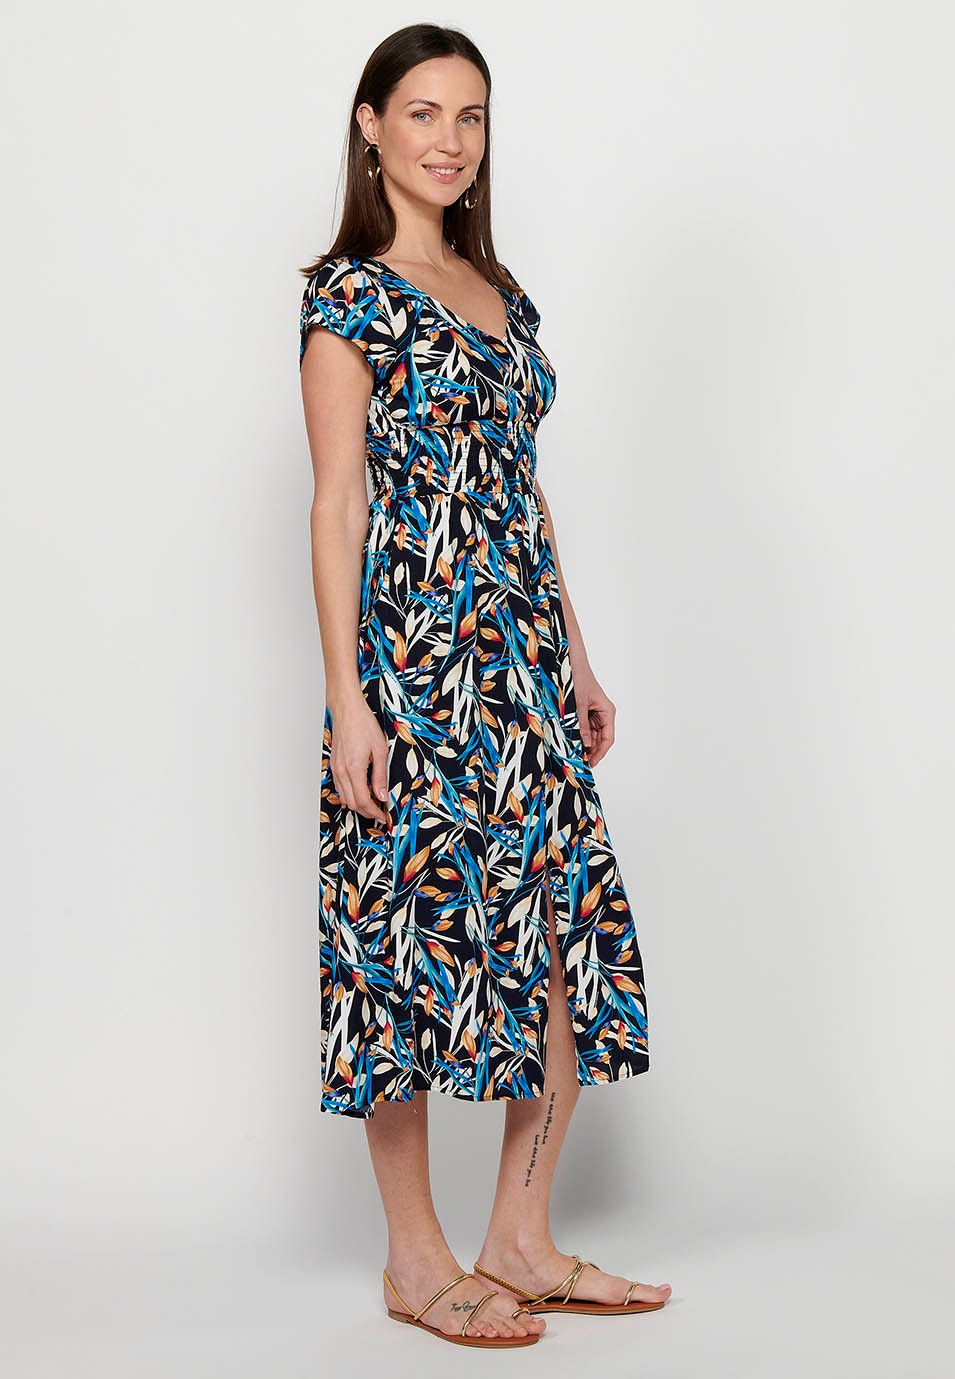 Damen-Kleid mit mehrfarbigem Blumendruck, V-Ausschnitt, kurzen Ärmeln und Schlitz vorne 3